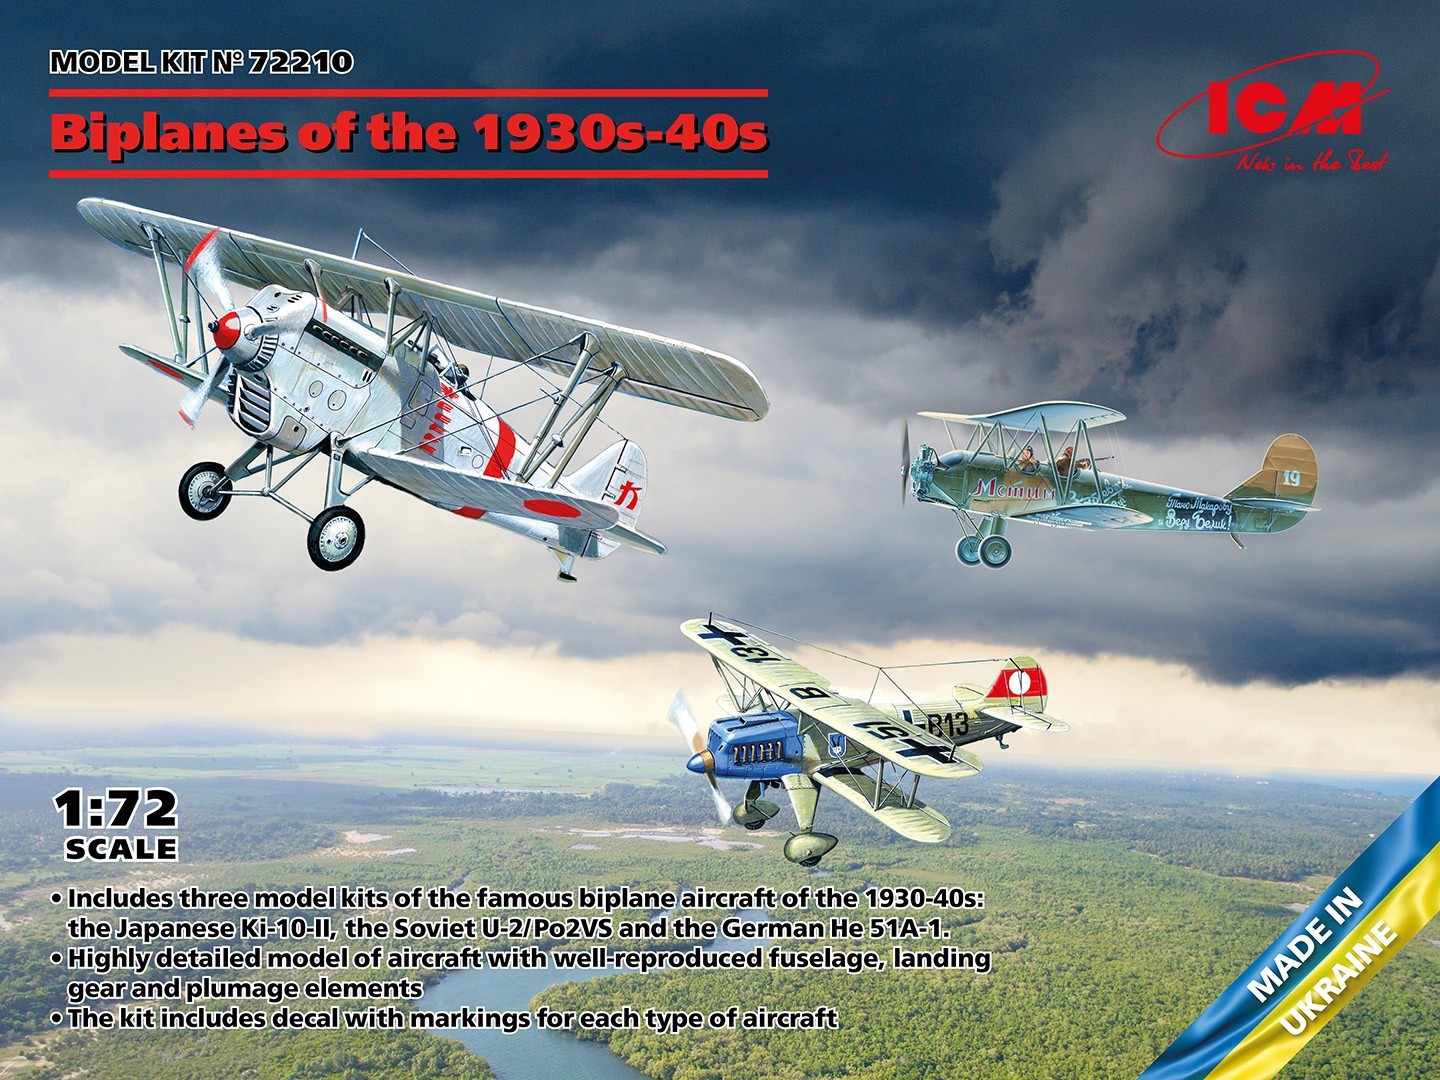 Biplanes of the 1930s and 1940s (Не-51A-1, Ki-10-II, U-2/Po-2VS)